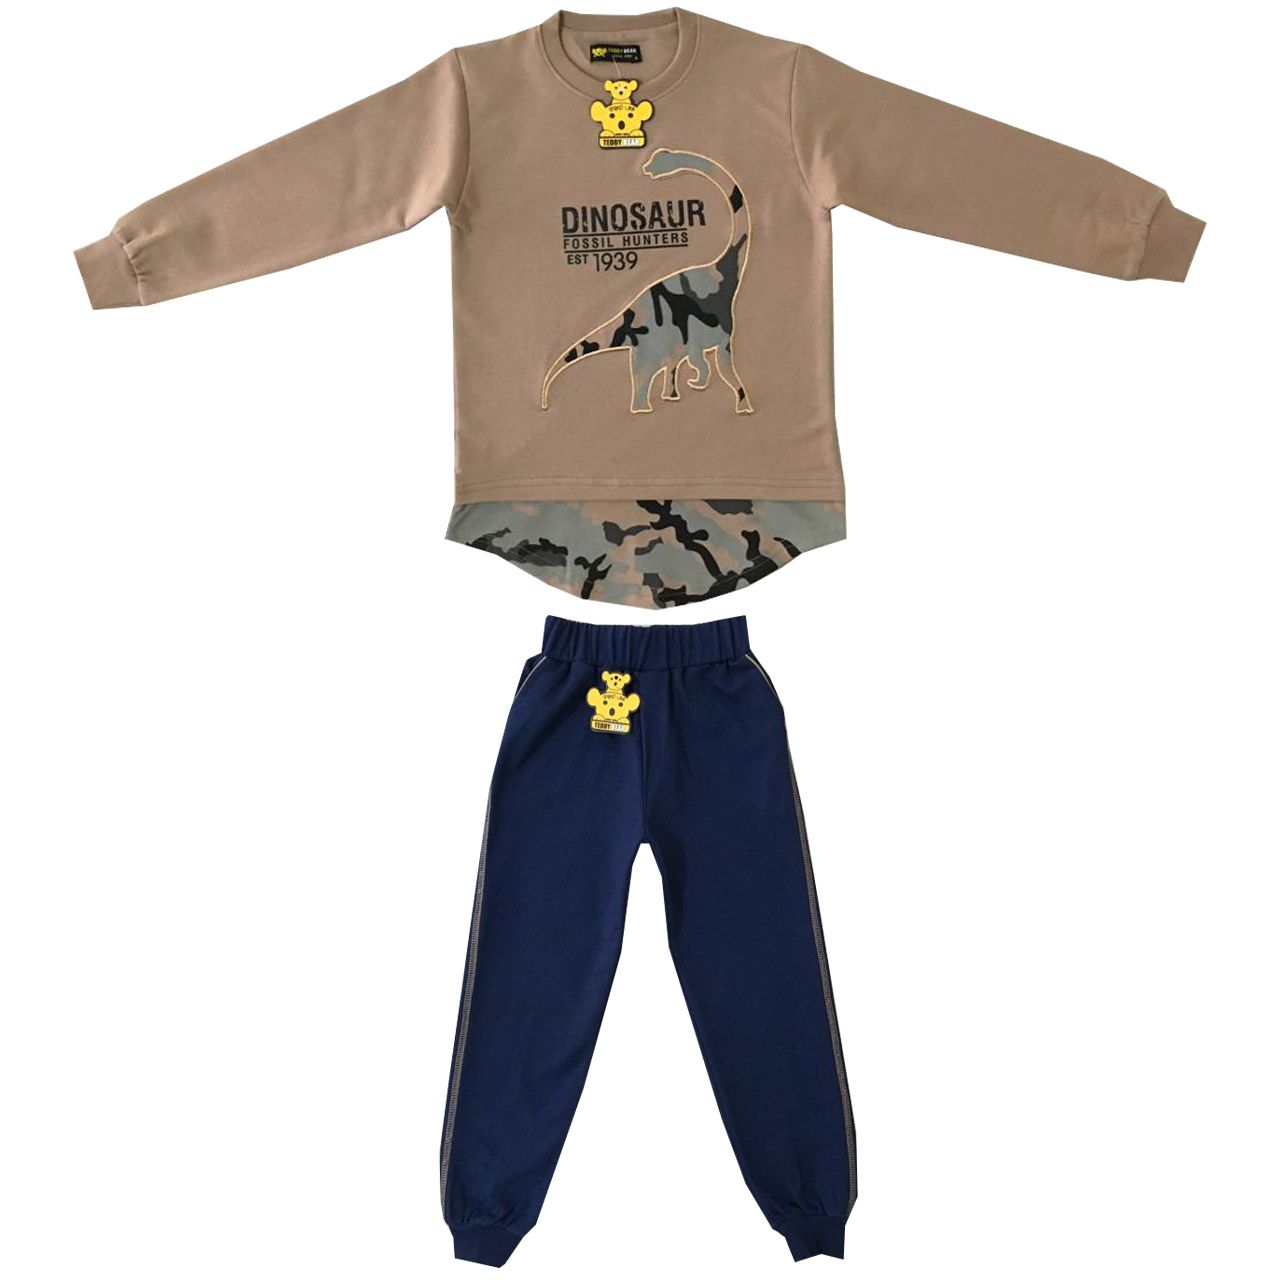 ست تی شرت و شلوار پسرانه خرس کوچولو مدل دانیاسور کد 02 -  - 1